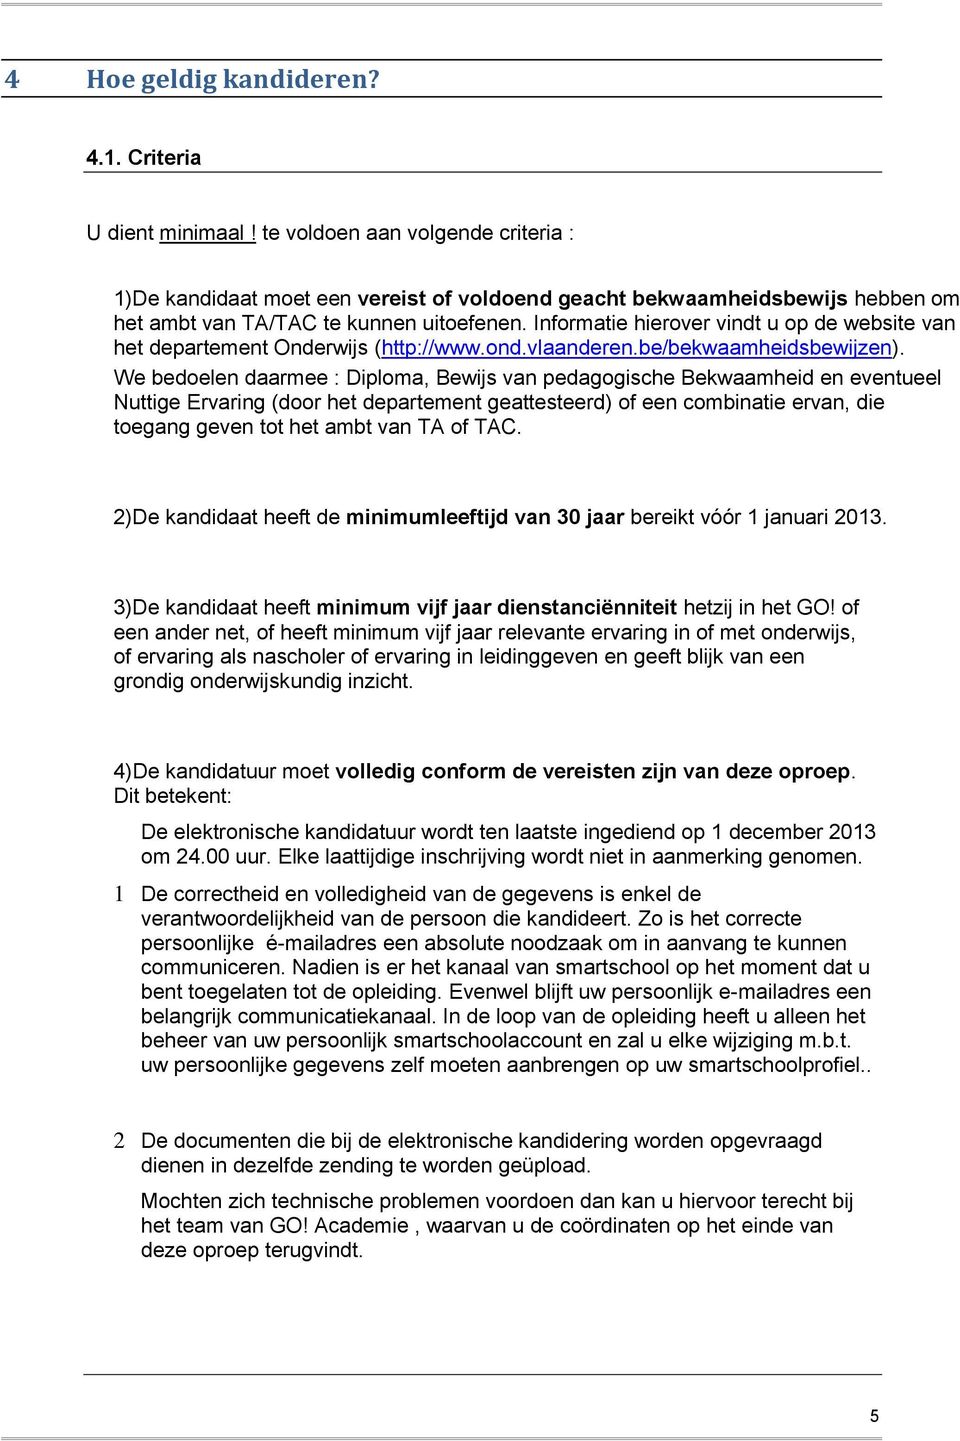 Informatie hierover vindt u op de website van het departement Onderwijs (http://www.ond.vlaanderen.be/bekwaamheidsbewijzen).